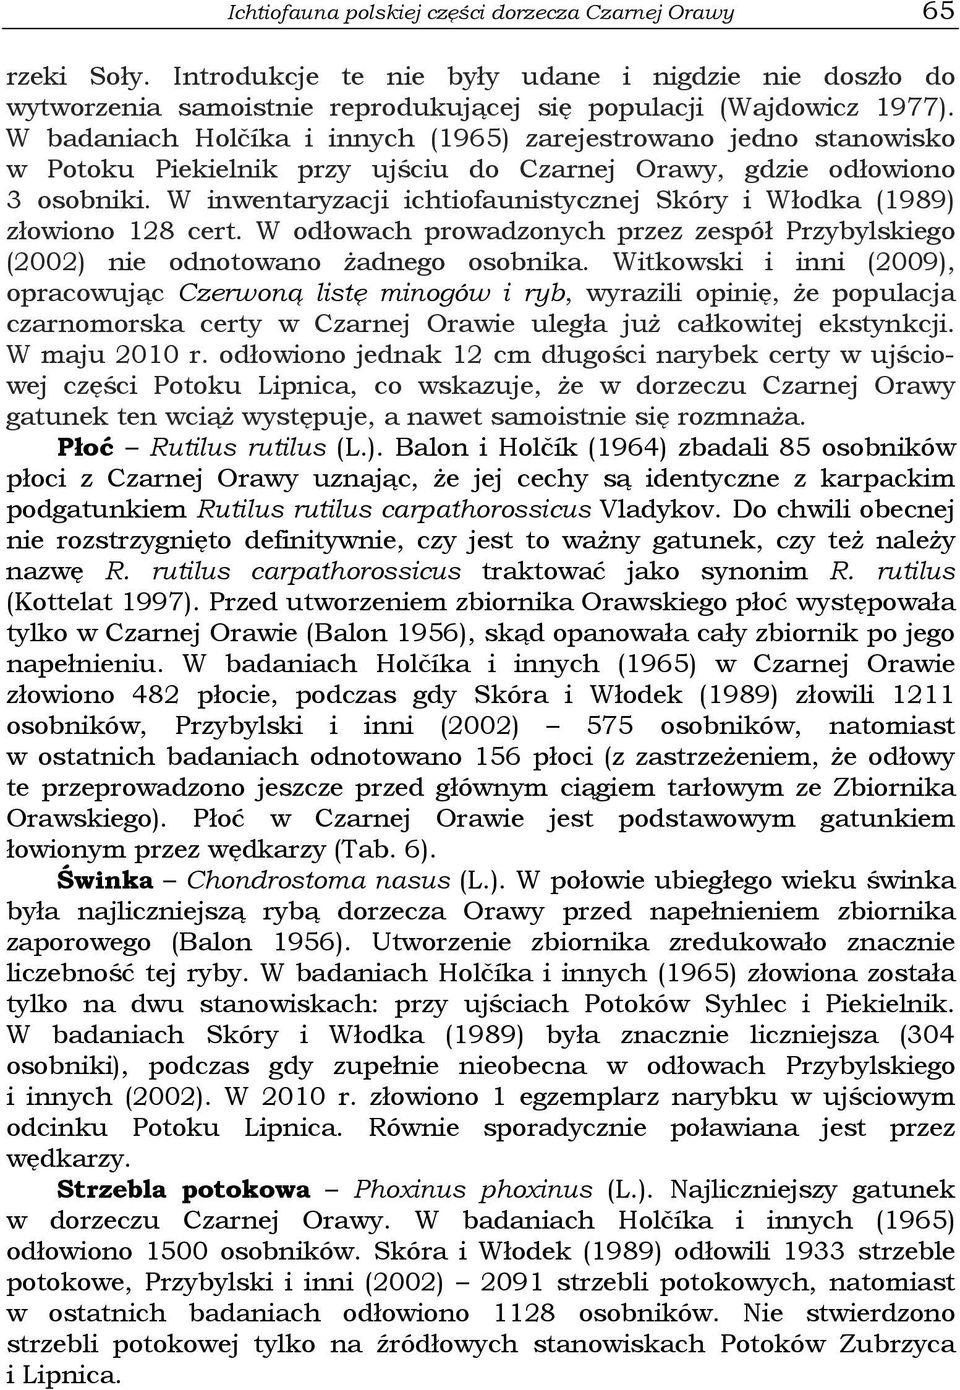 W inwentaryzacji ichtiofaunistycznej Skóry i Włodka (1989) złowiono 128 cert. W odłowach prowadzonych przez zespół Przybylskiego (2002) nie odnotowano żadnego osobnika.